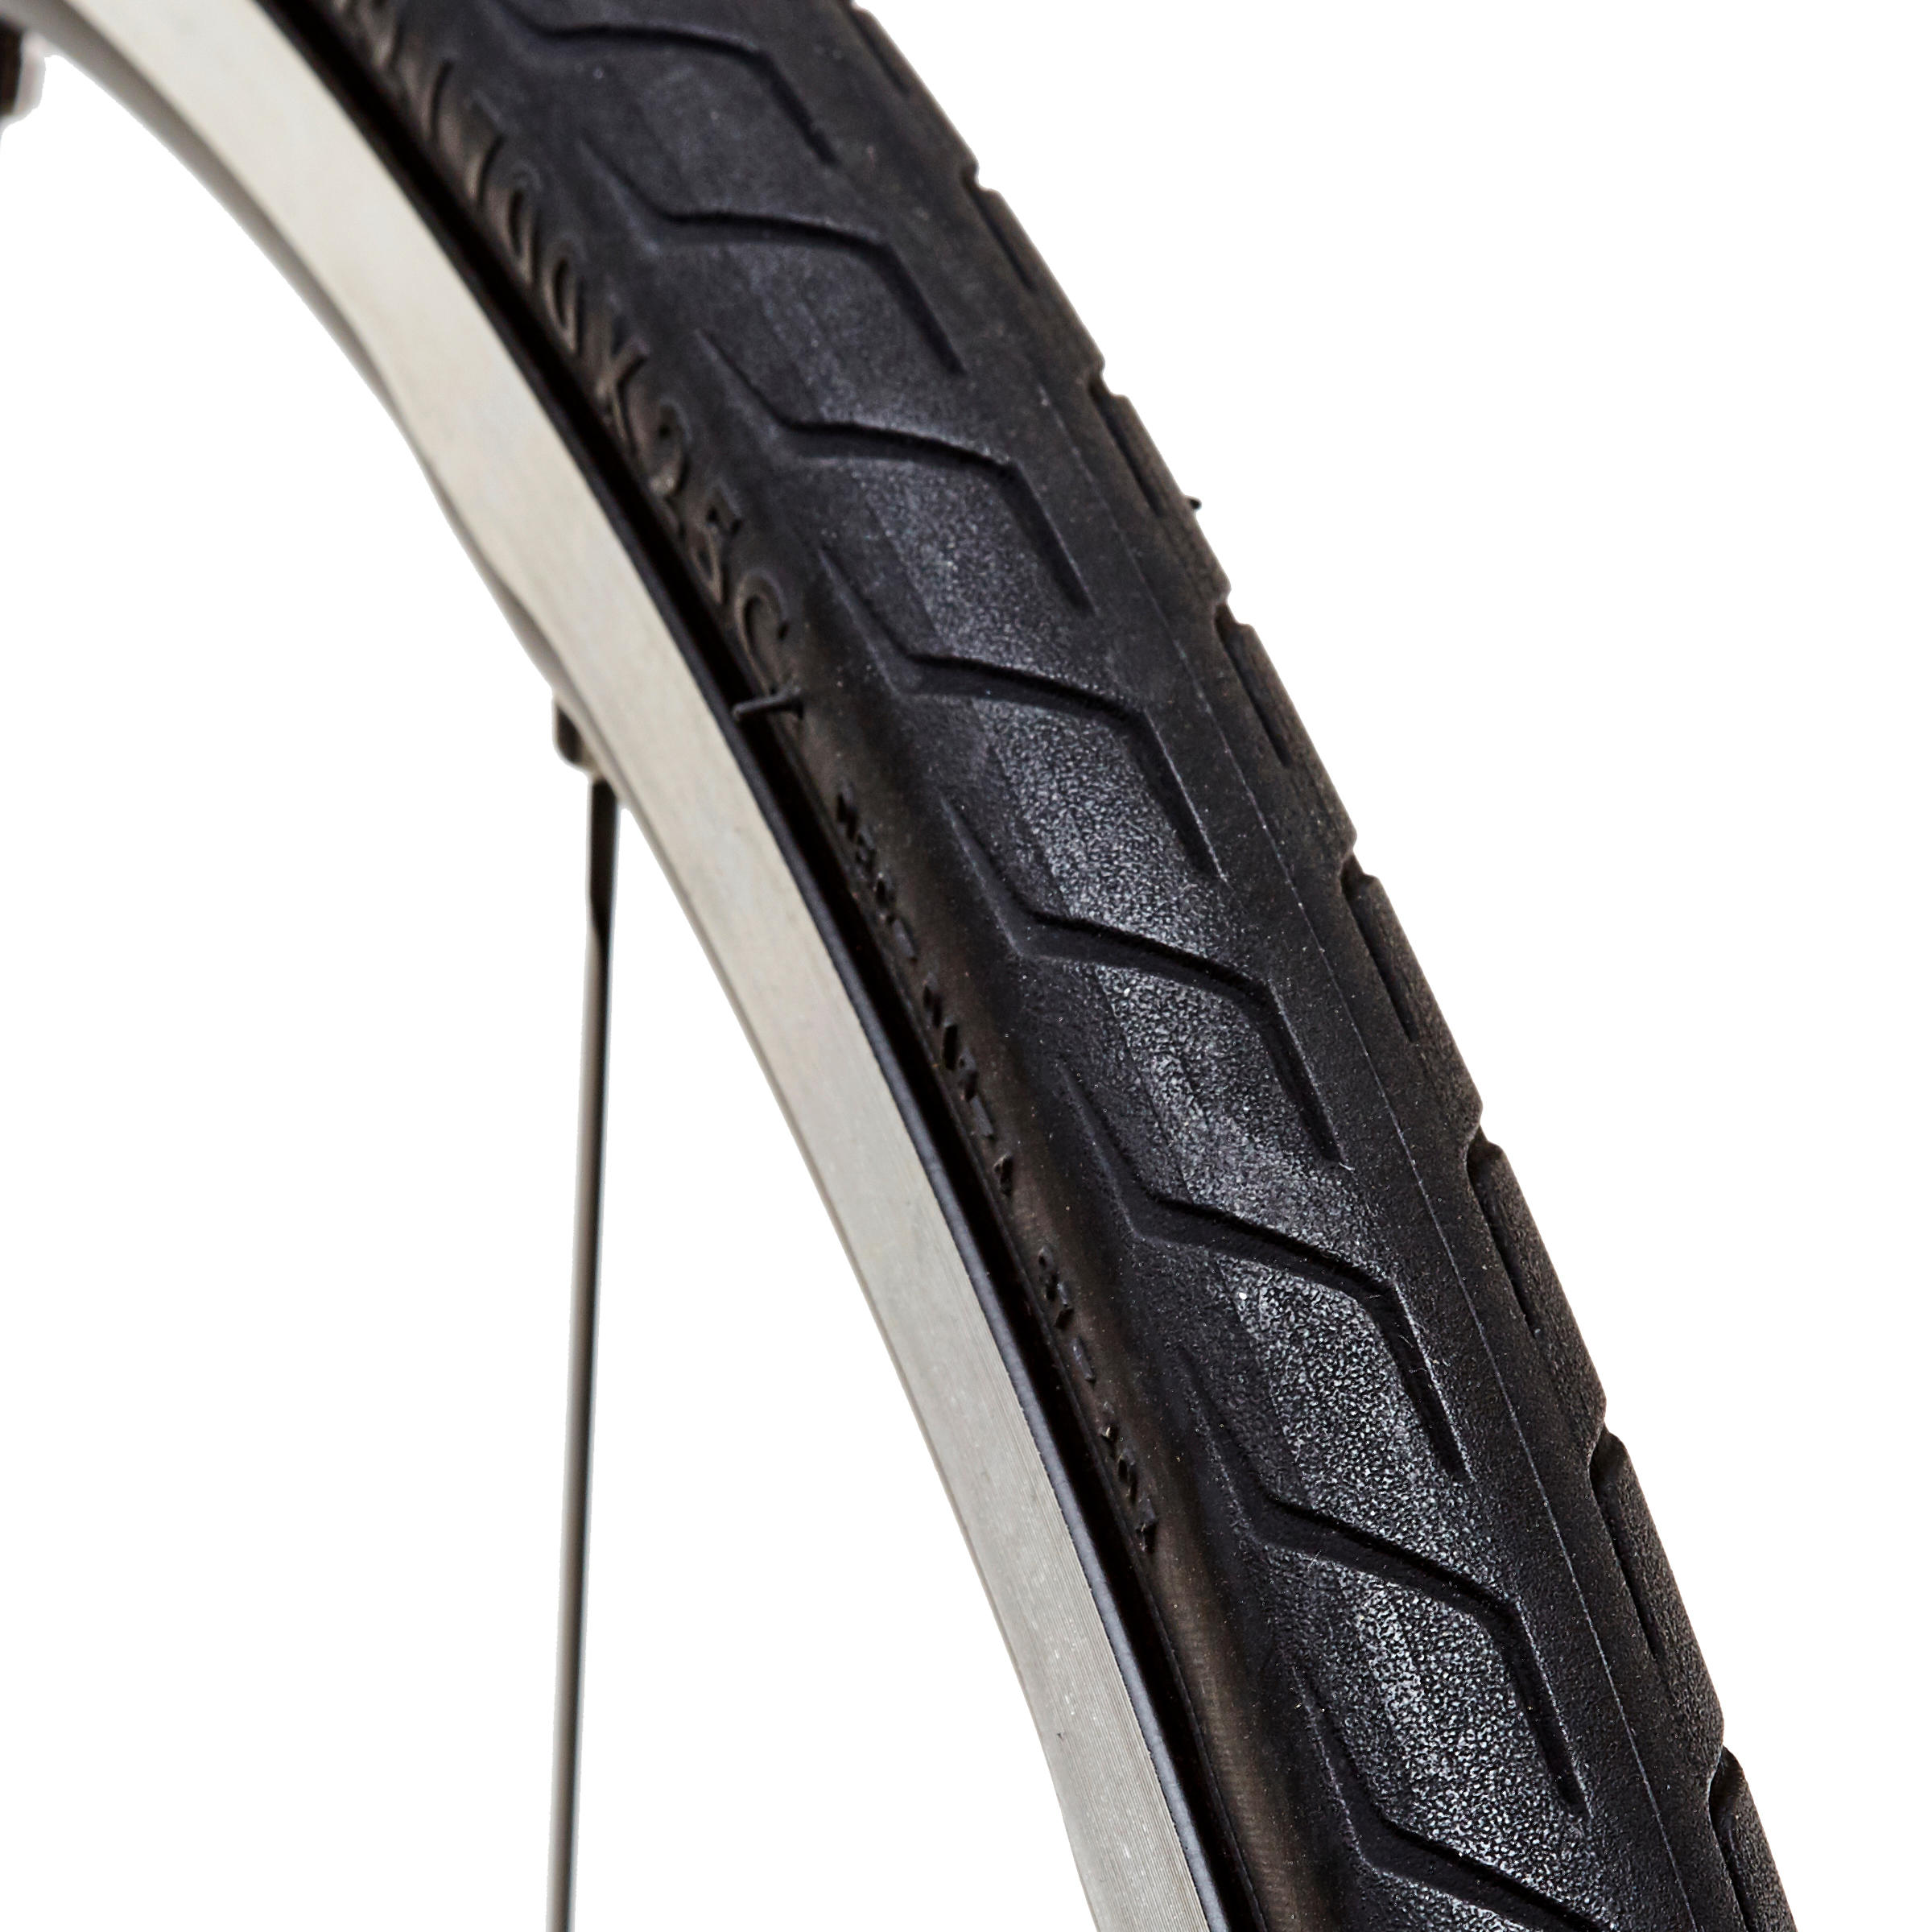 700x25 road bike tires